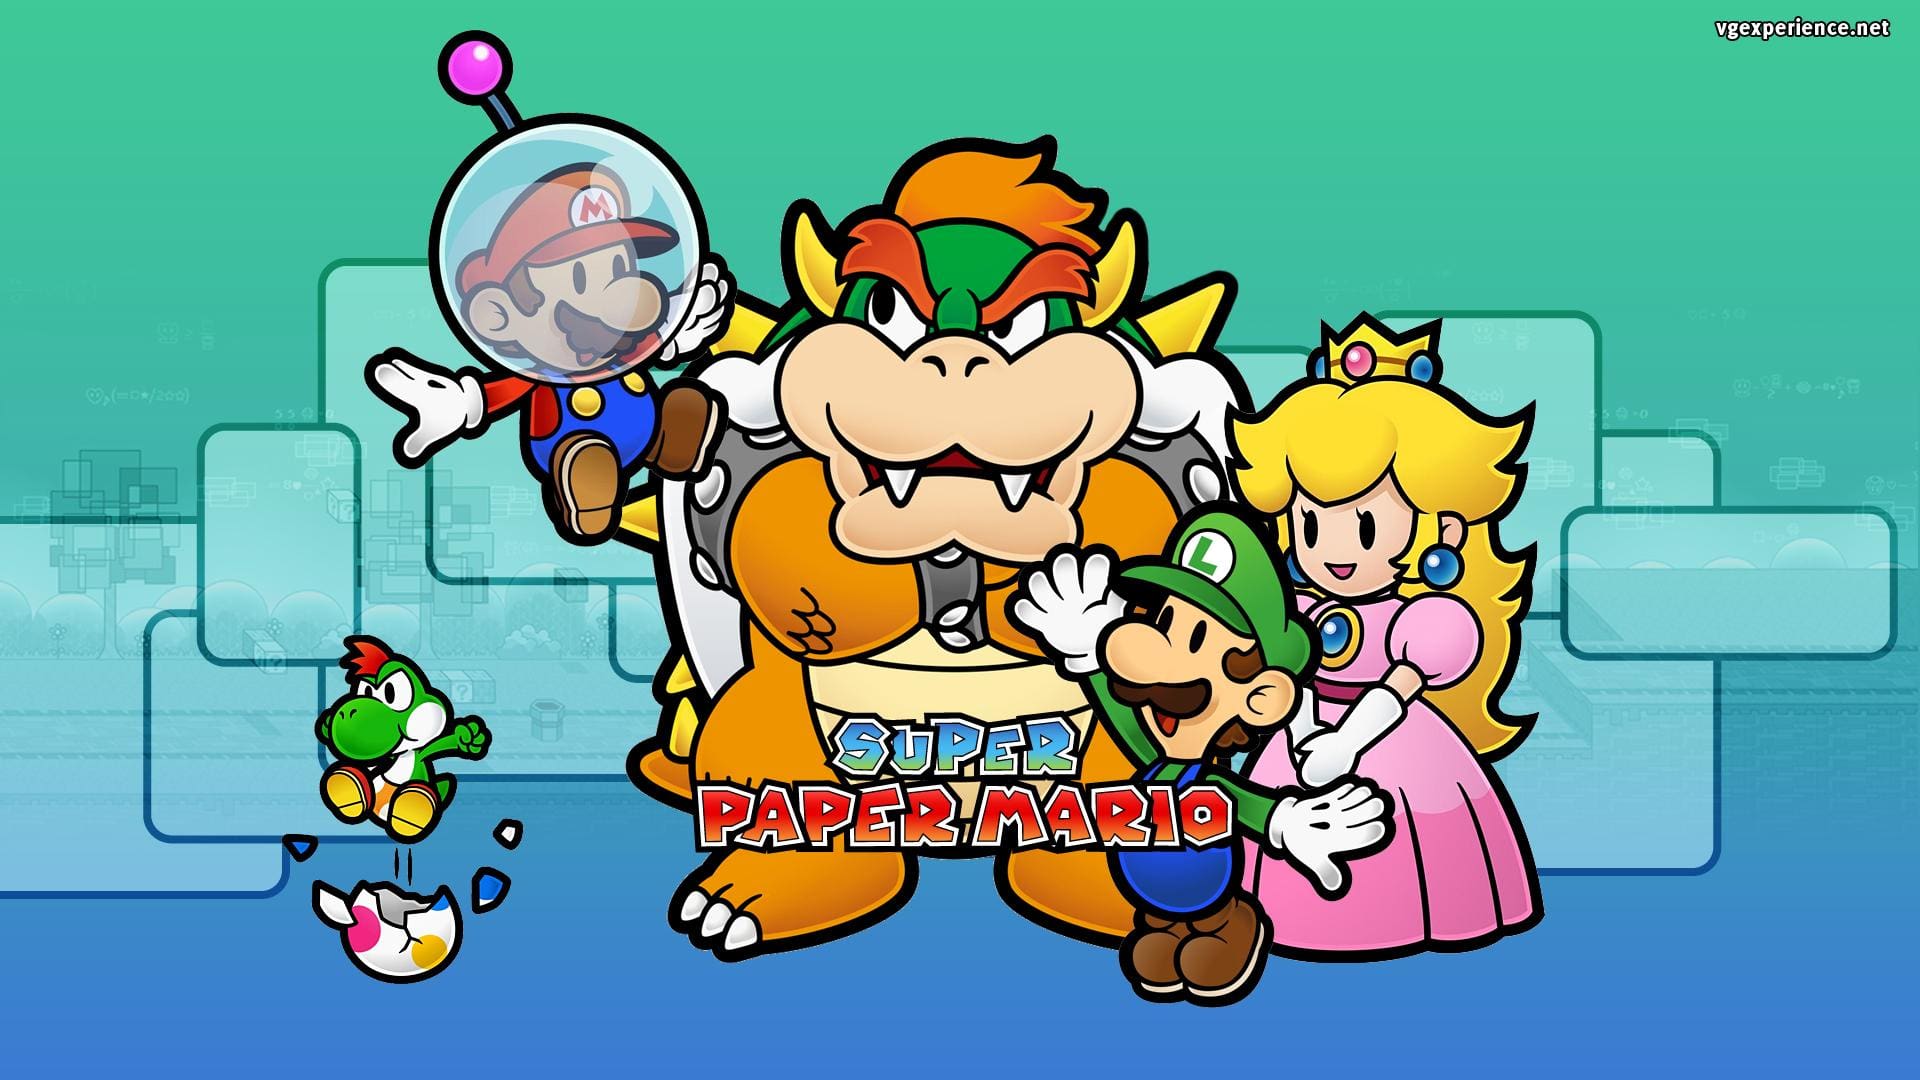 "A aventura épica de Super Paper Mario na Nintendo Wii - Celebrando a sua lendária estreia em 2007!" Anos 2000, Jogos, Nostalgia, Retro Gaming, Reviews